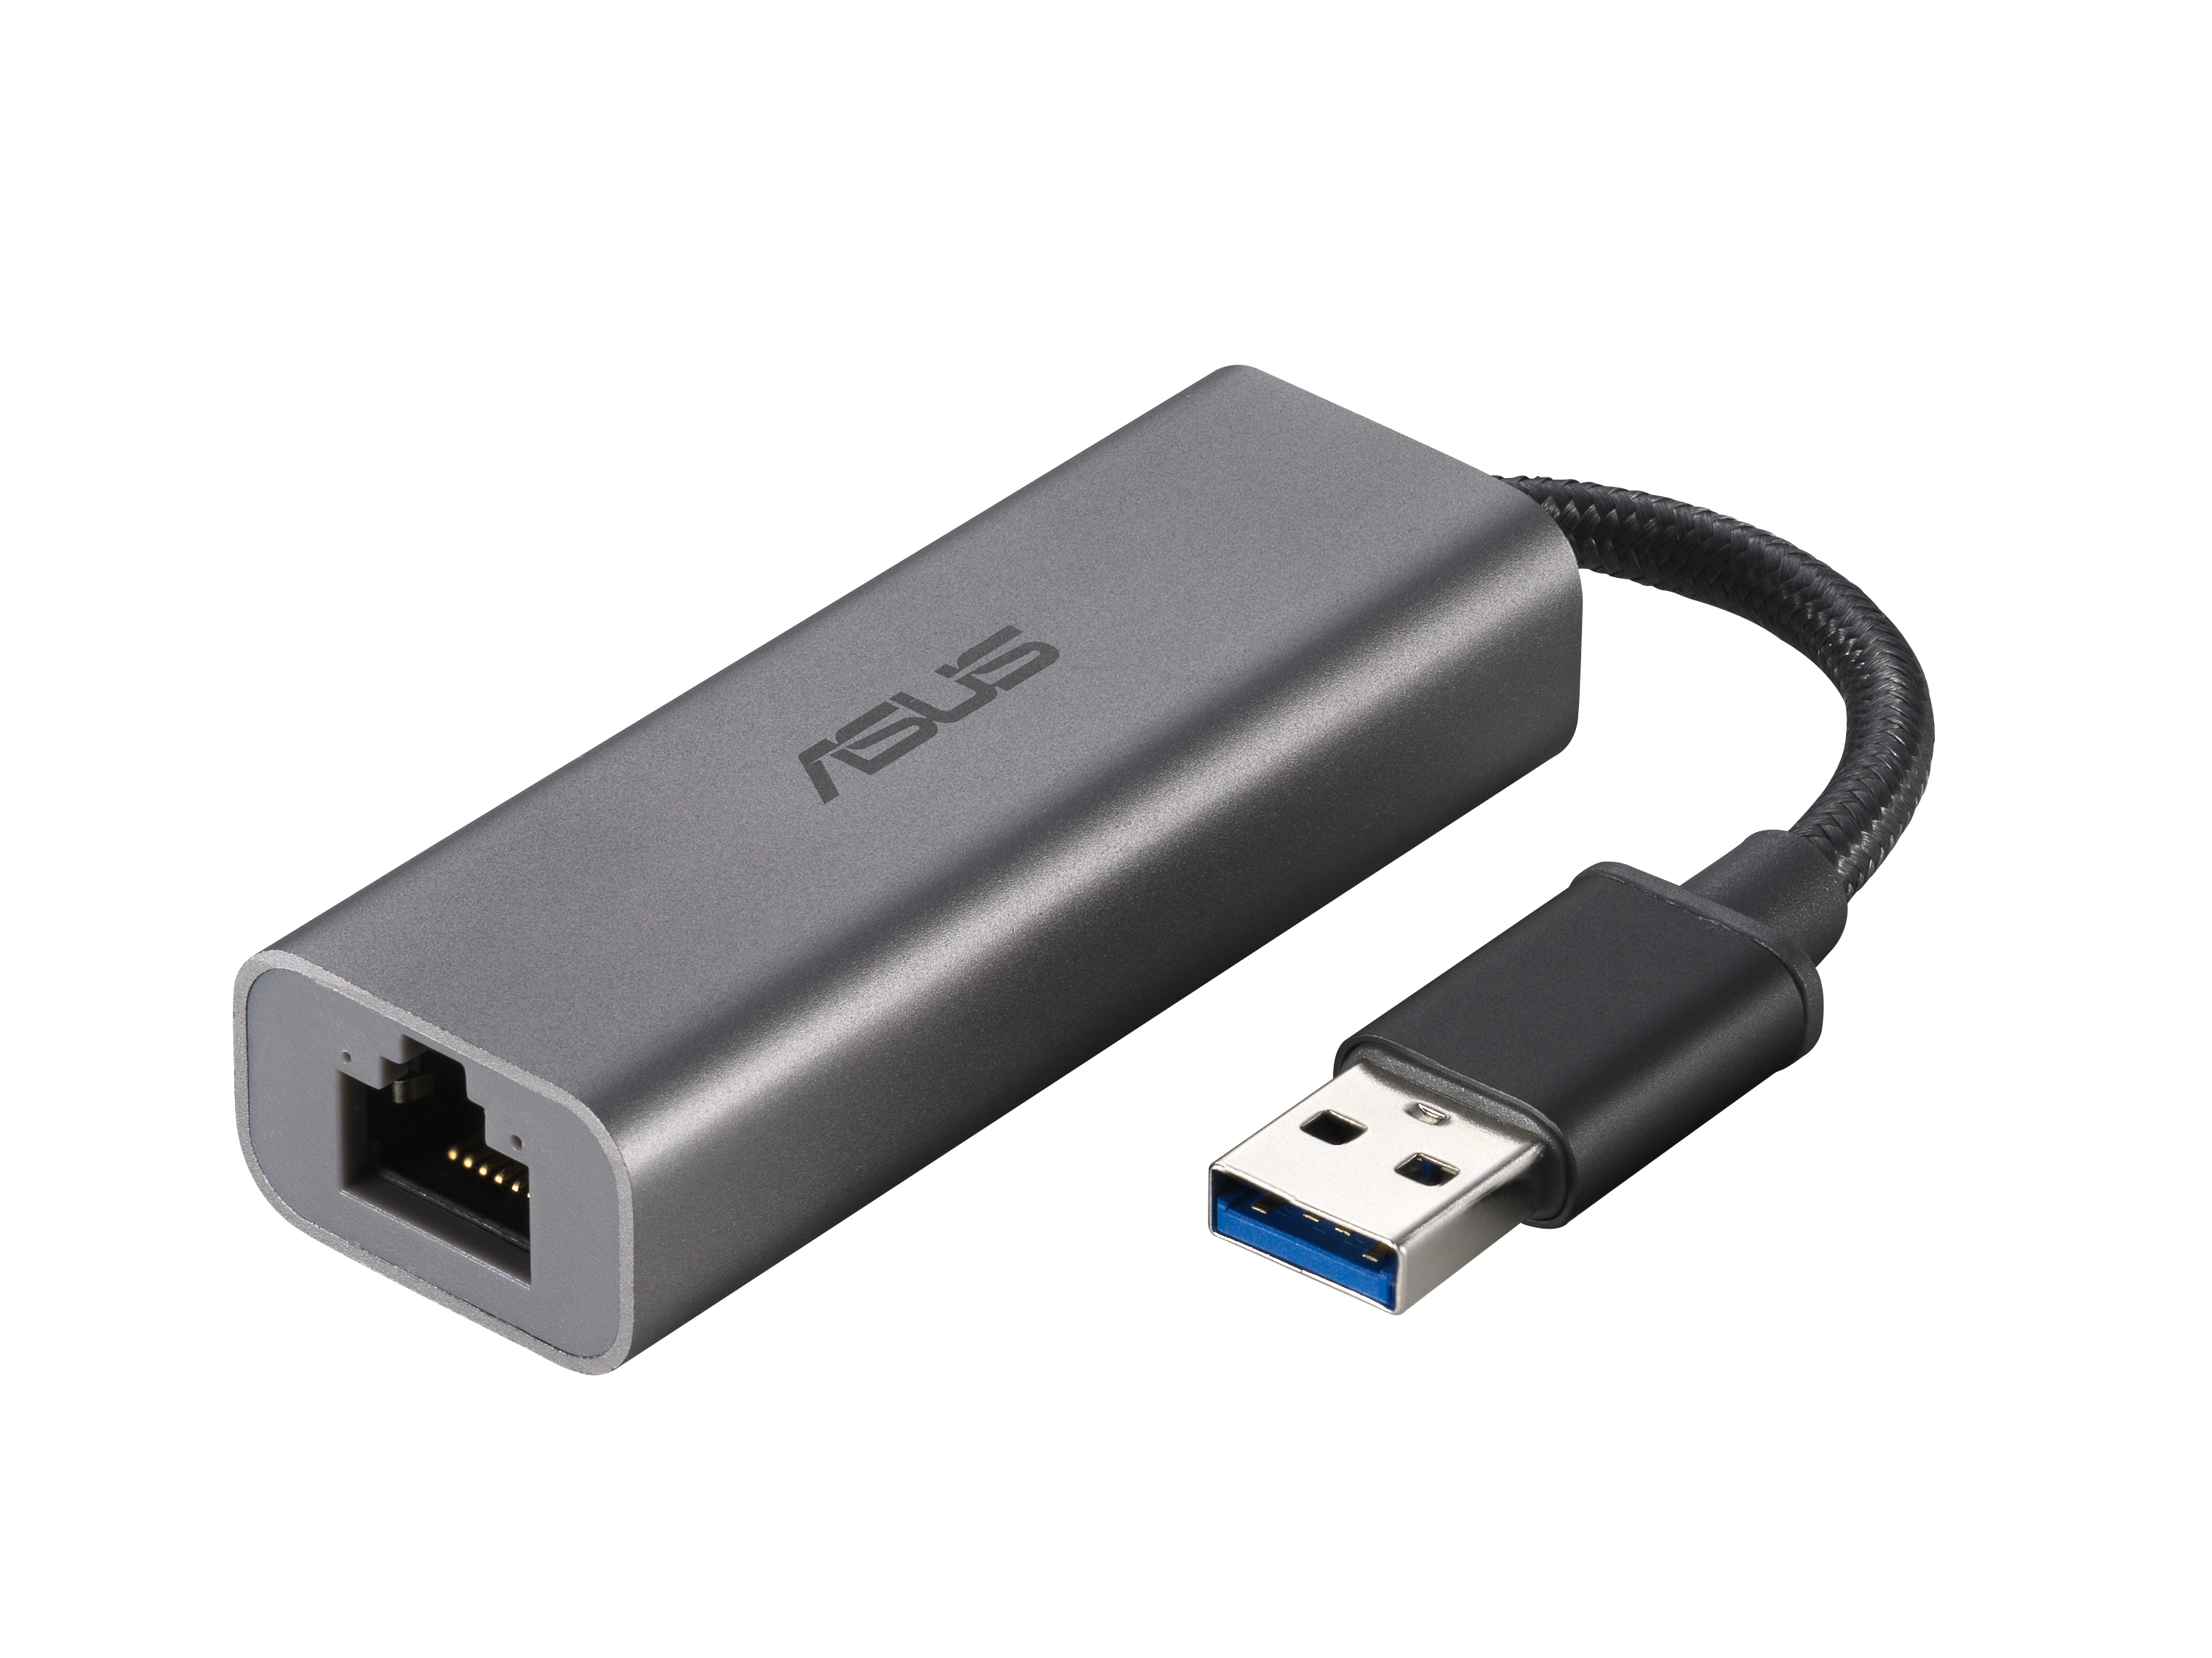 Asus - Adaptador USB ASUS USB-A > Ethernet 2.5G